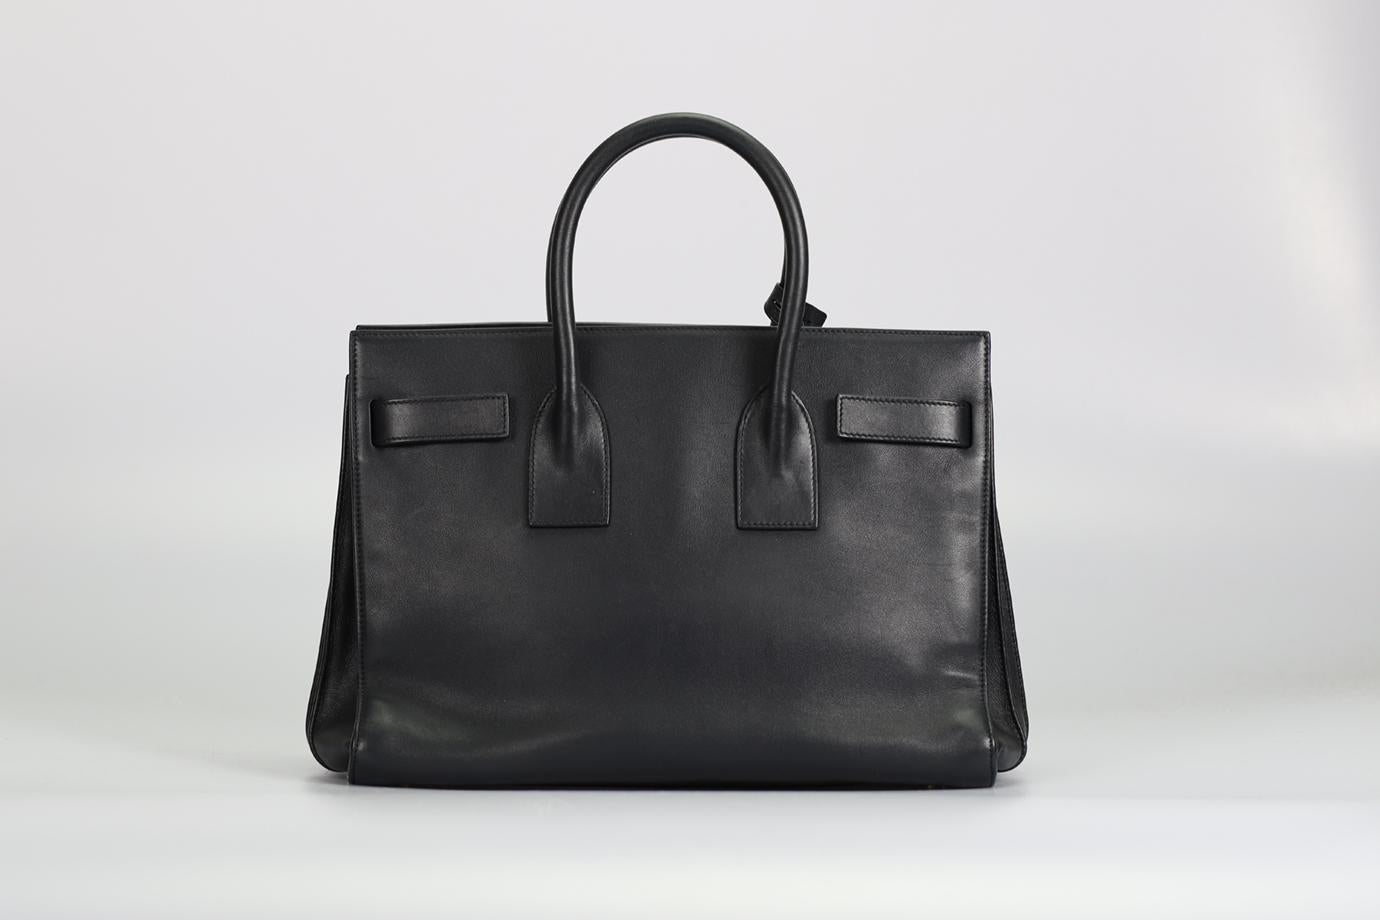 Saint Laurent Sac Du Jour Small Leather Tote Bag For Sale 2